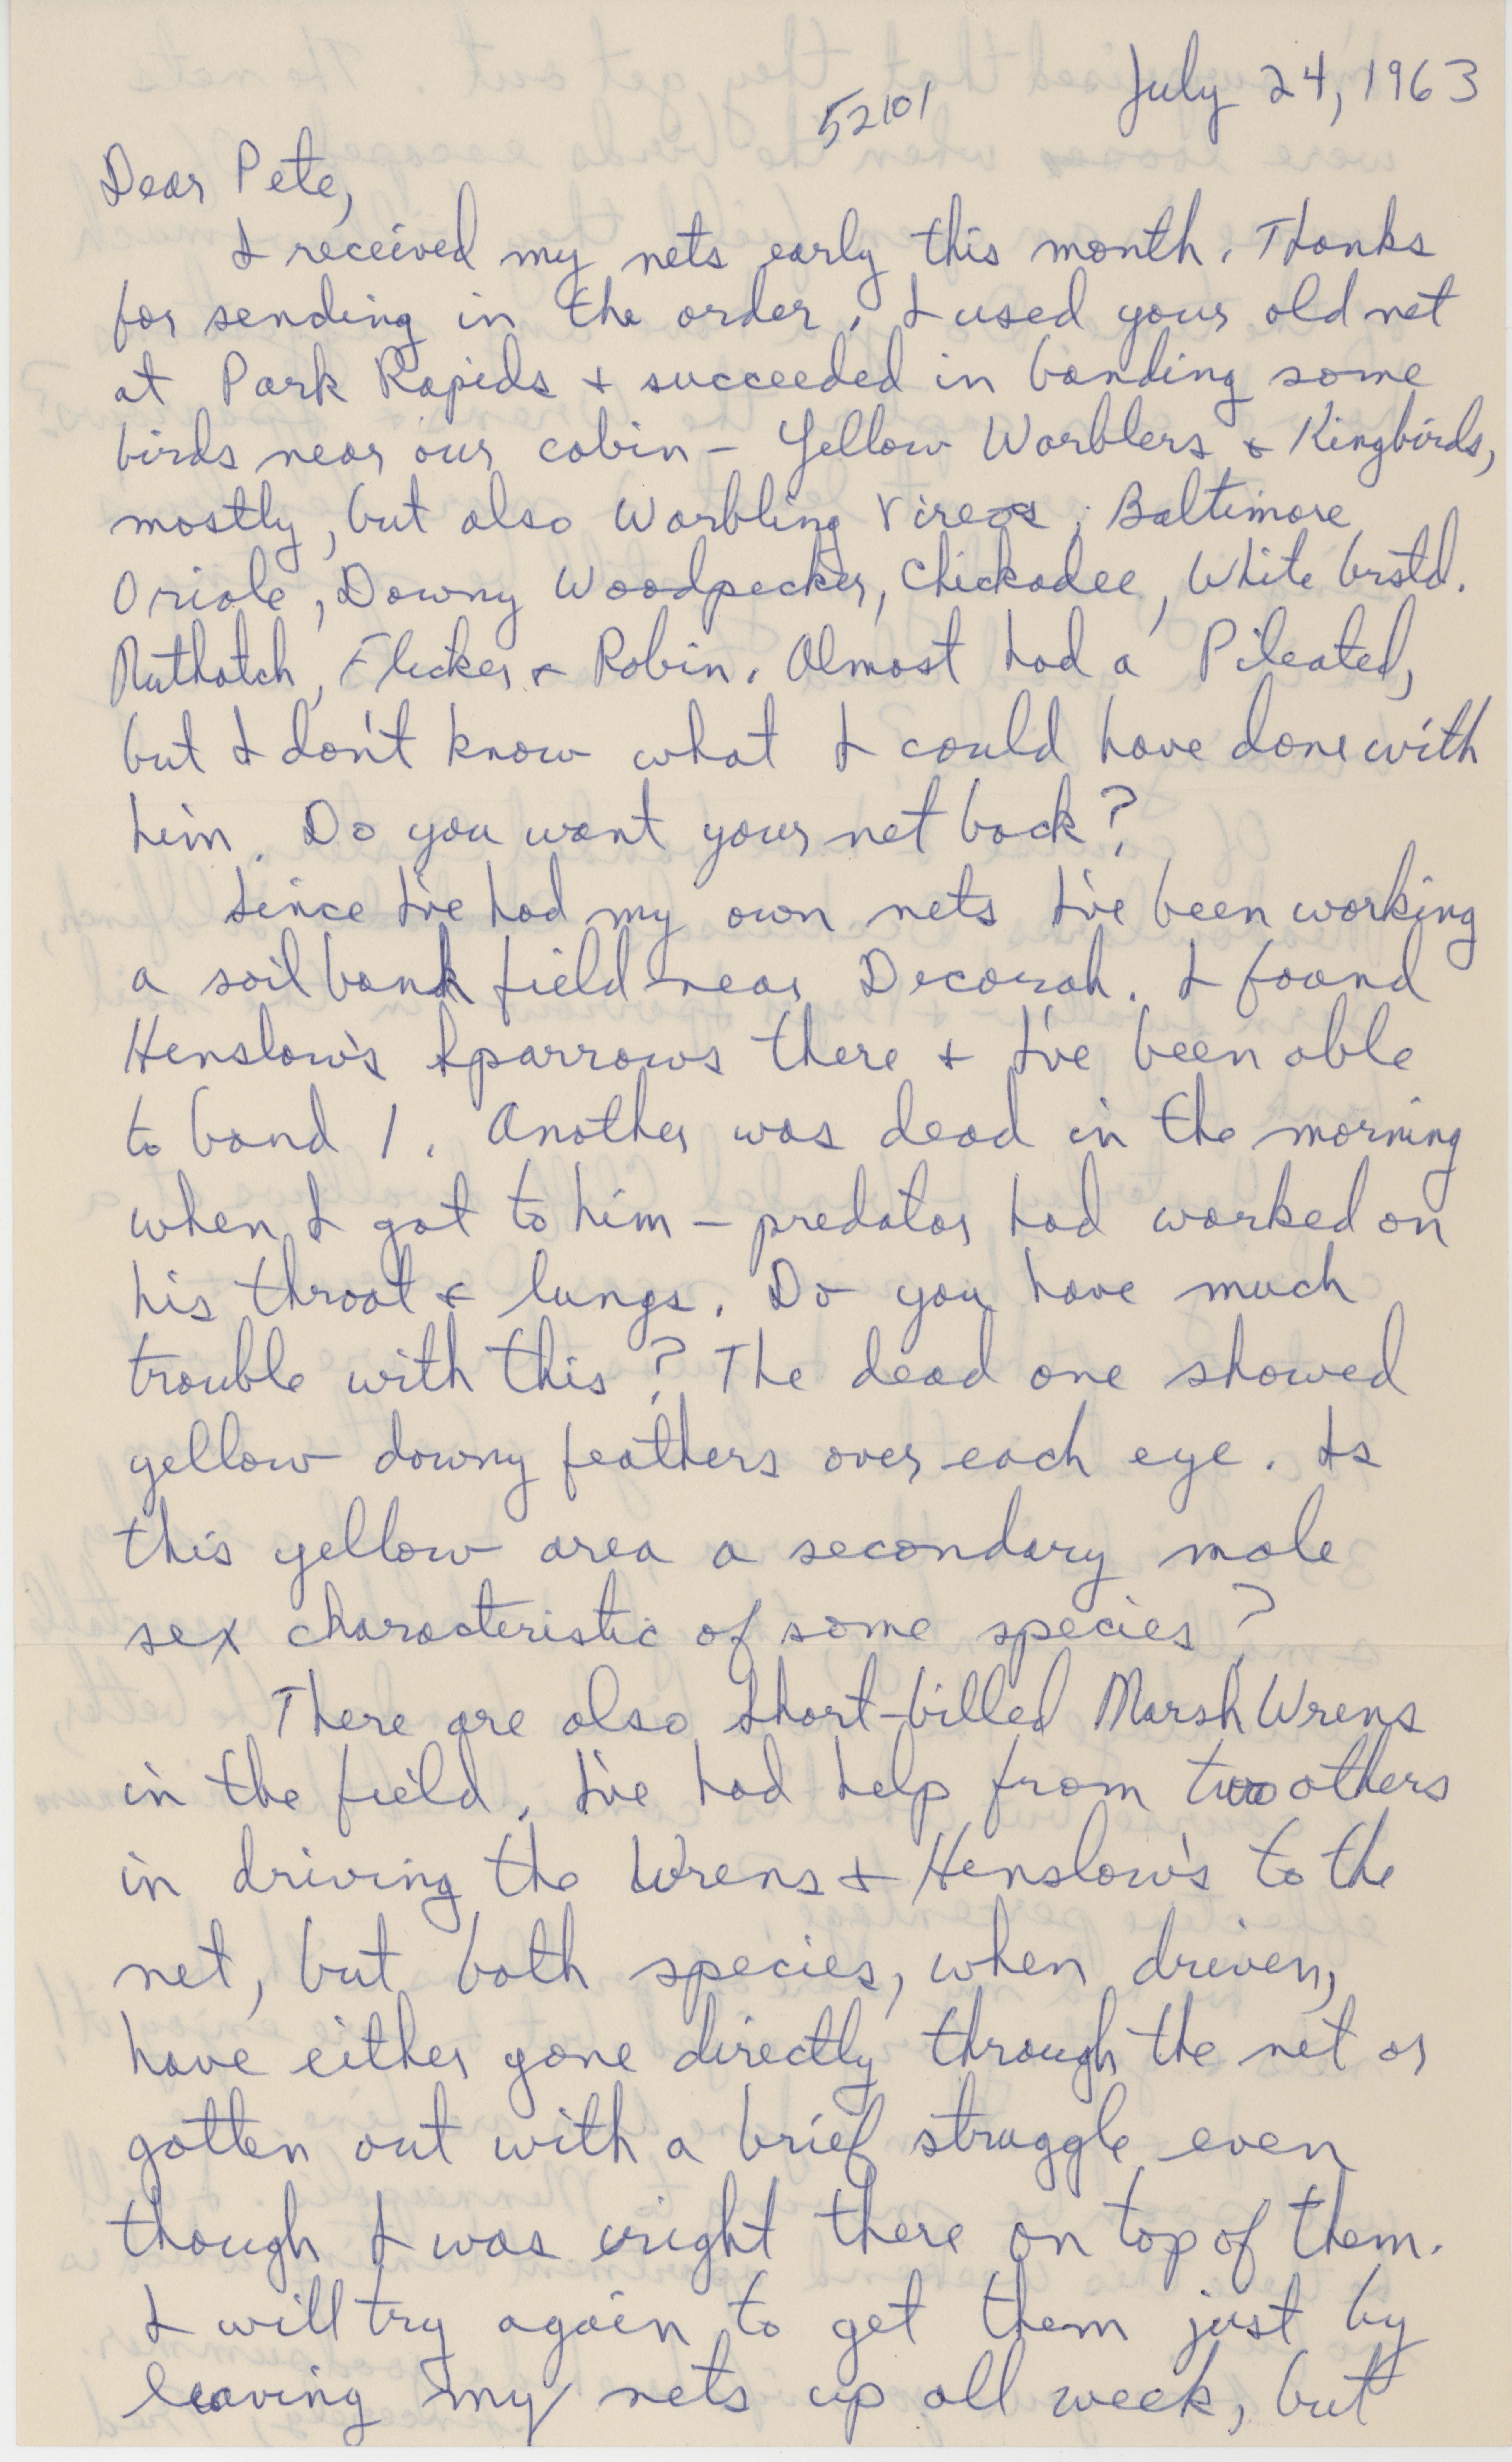 Letter to Peter C. Petersen regarding bird summer sightings, July 24, 1963